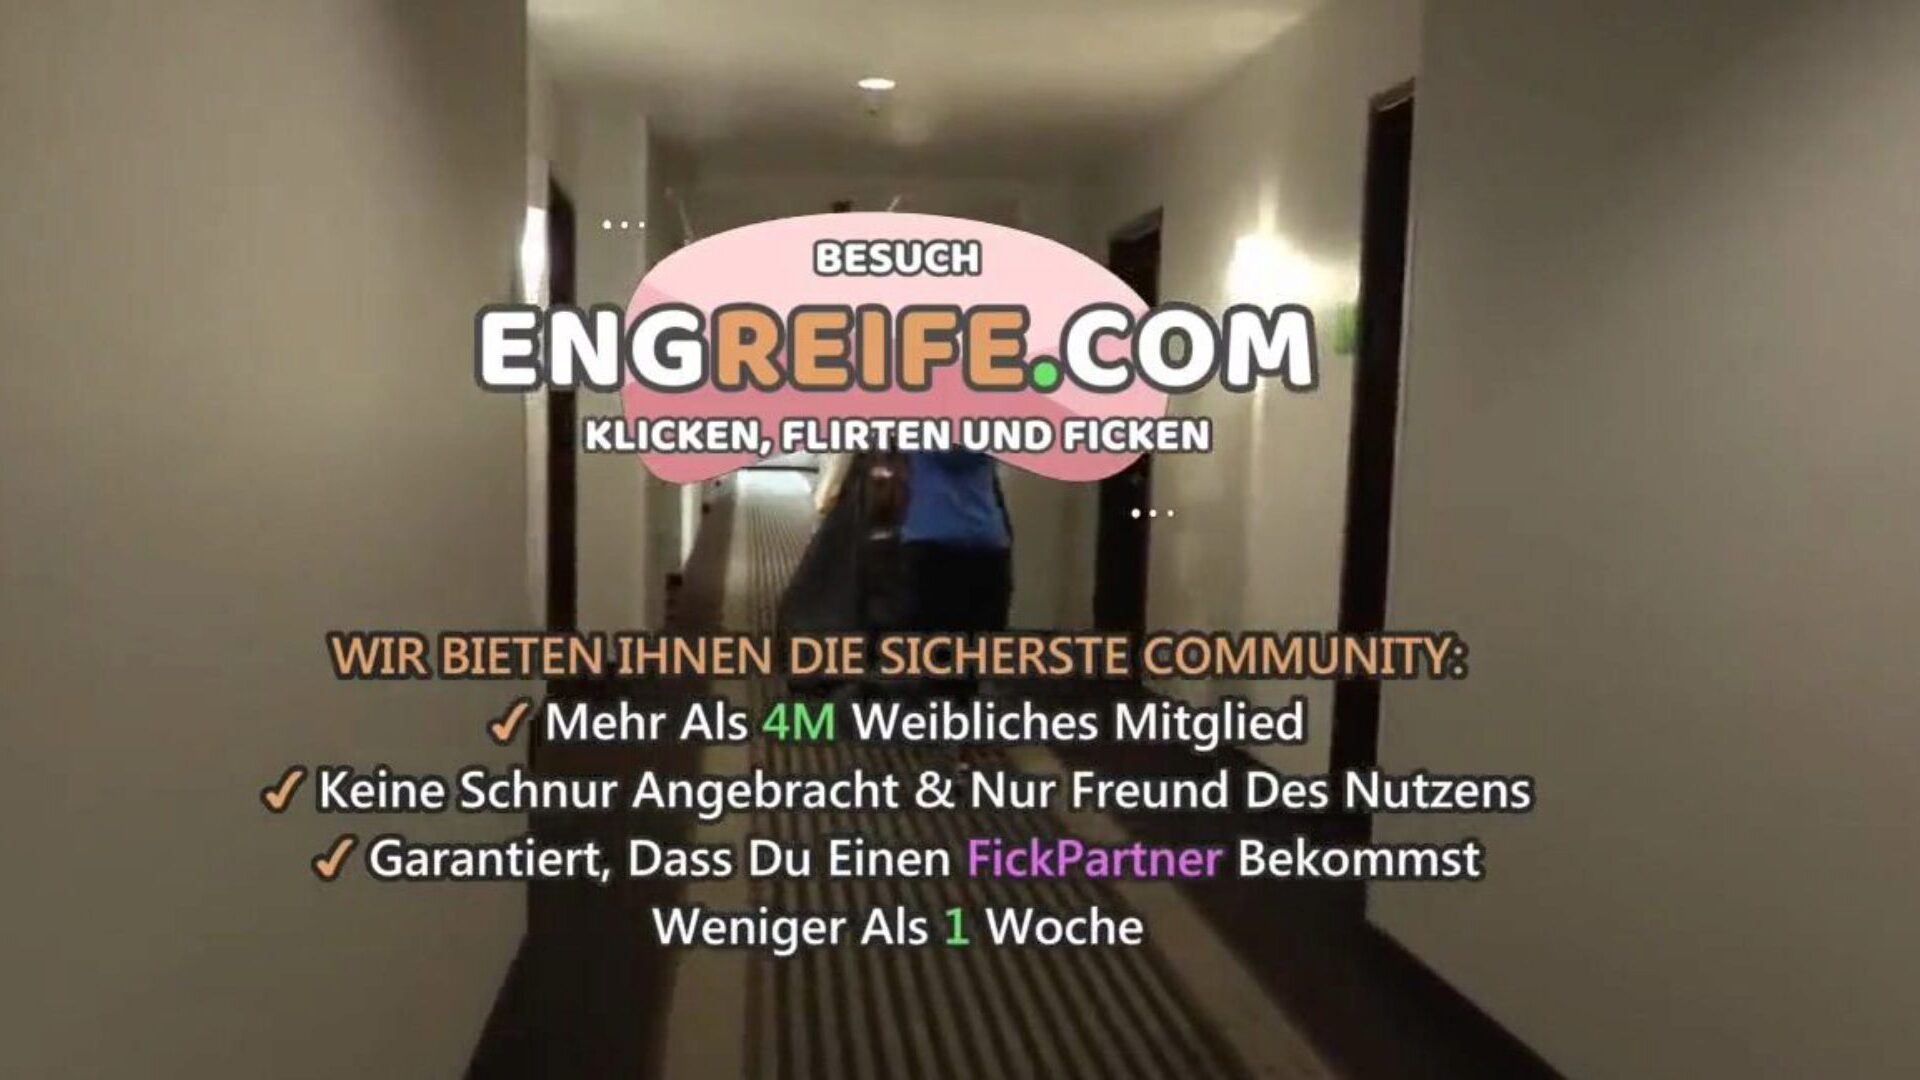 hotelreinigungs service vom gast verfuhrt: free hd porn 3a watch hotelreinigungs service vom gast verfuhrt clip on xhamster - η απόλυτη επιλογή δωρεάν γερμανικών γερμανικών ερασιτεχνών HD σκληρού πυρήνα πορνό βίντεο